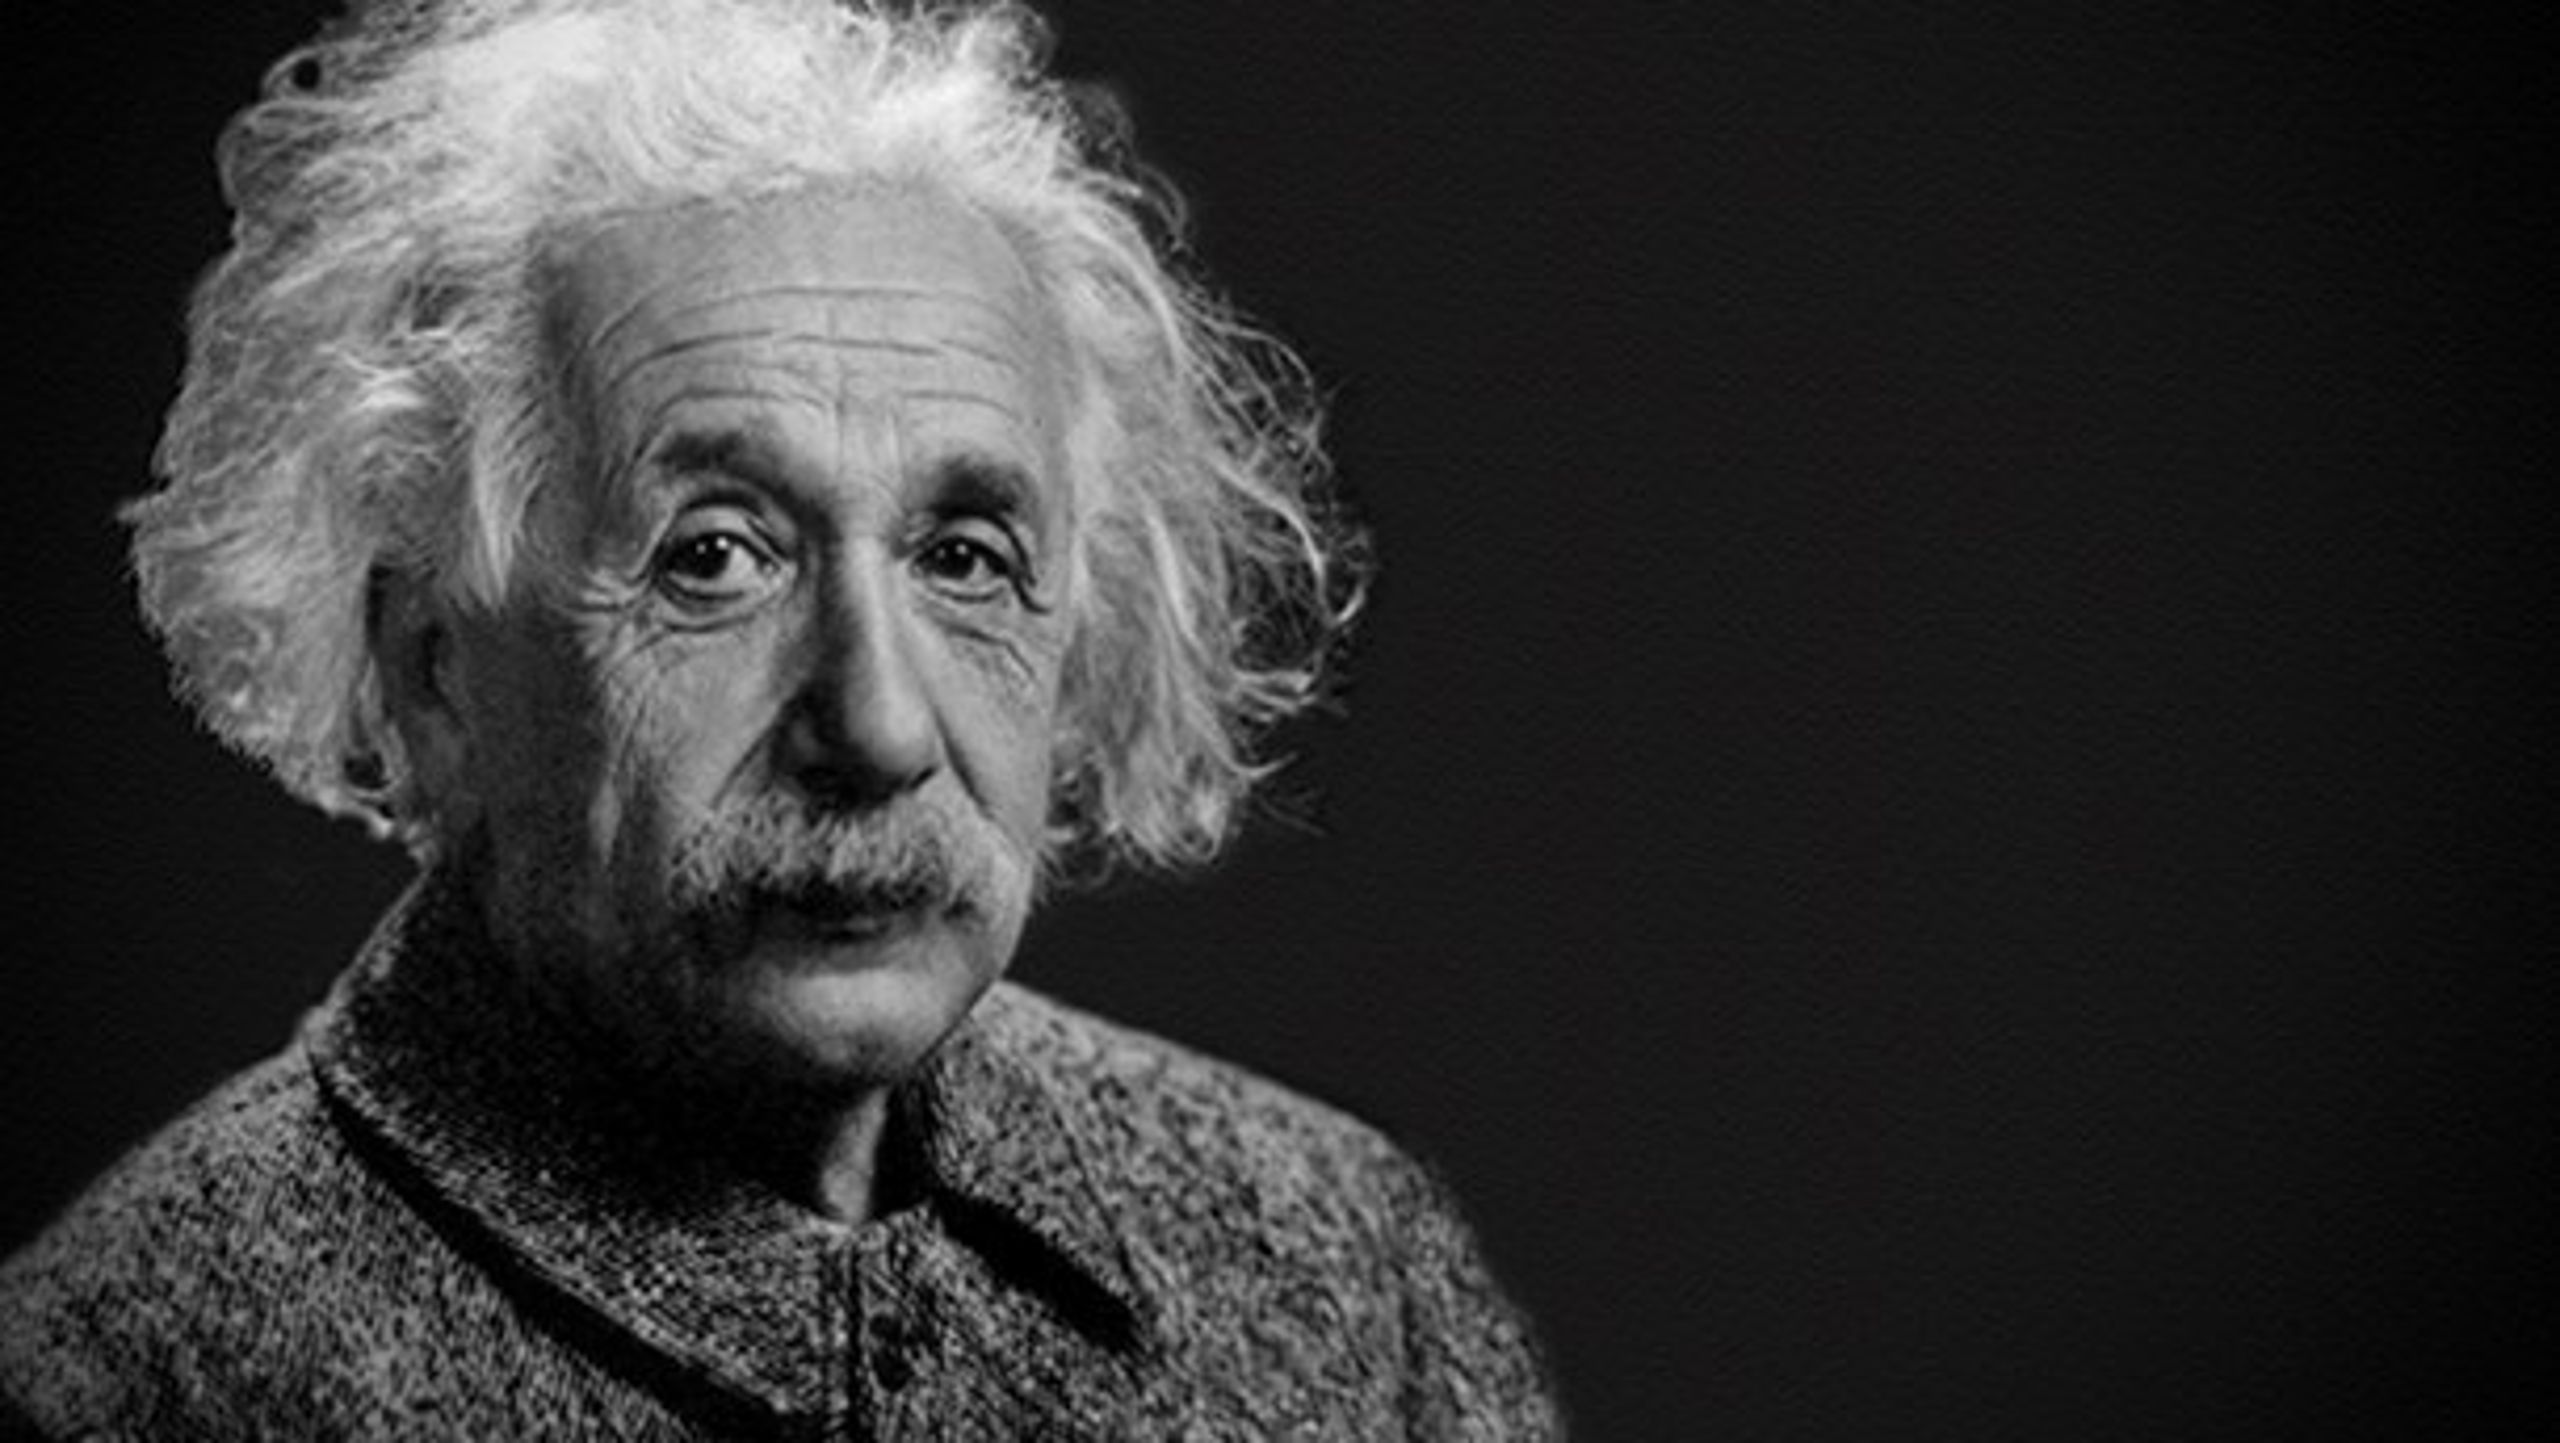 Facebookopslag hævder, at Albert Einstein er manden bag et brev, der i øjeblikket florerer på Facebook. Men brevet er fabrikeret, fortæller en professor.